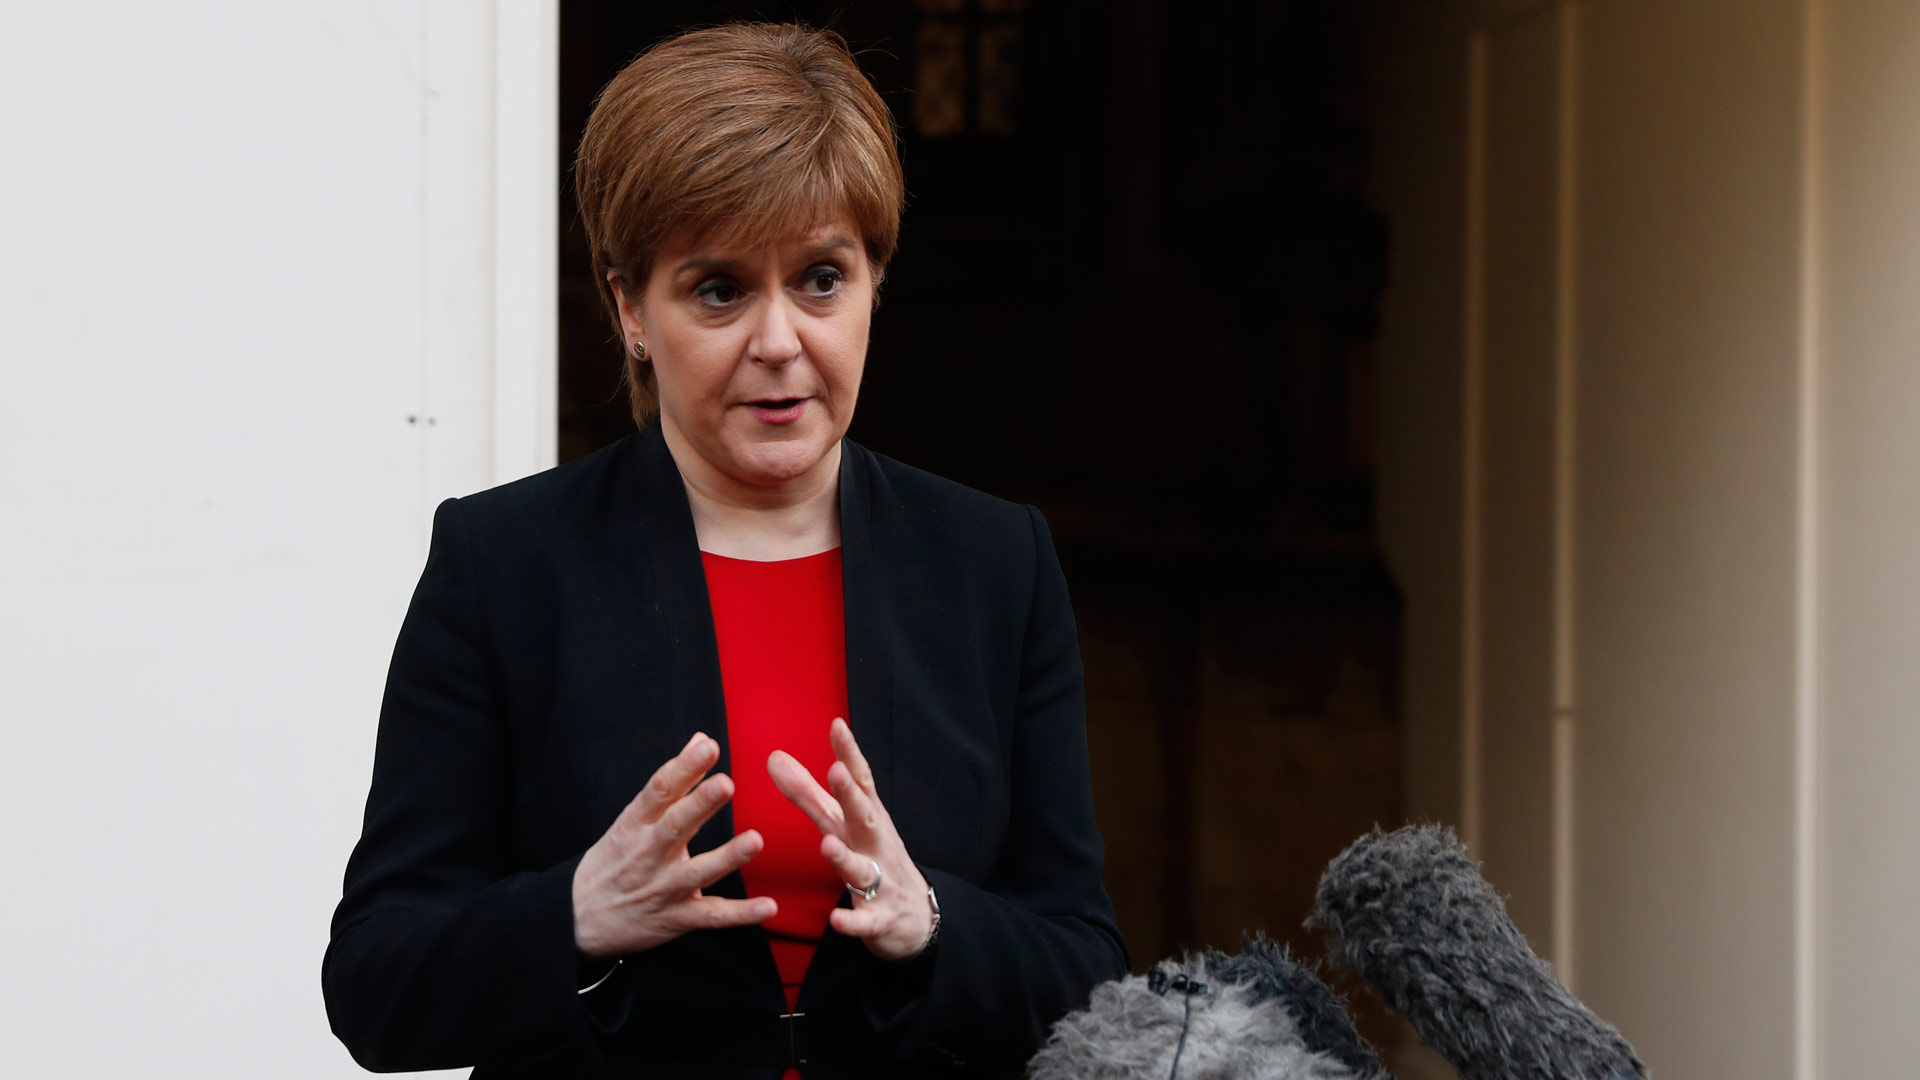 La primera ministra escocesa planea un nuevo referéndum sobre la independencia antes de 2021